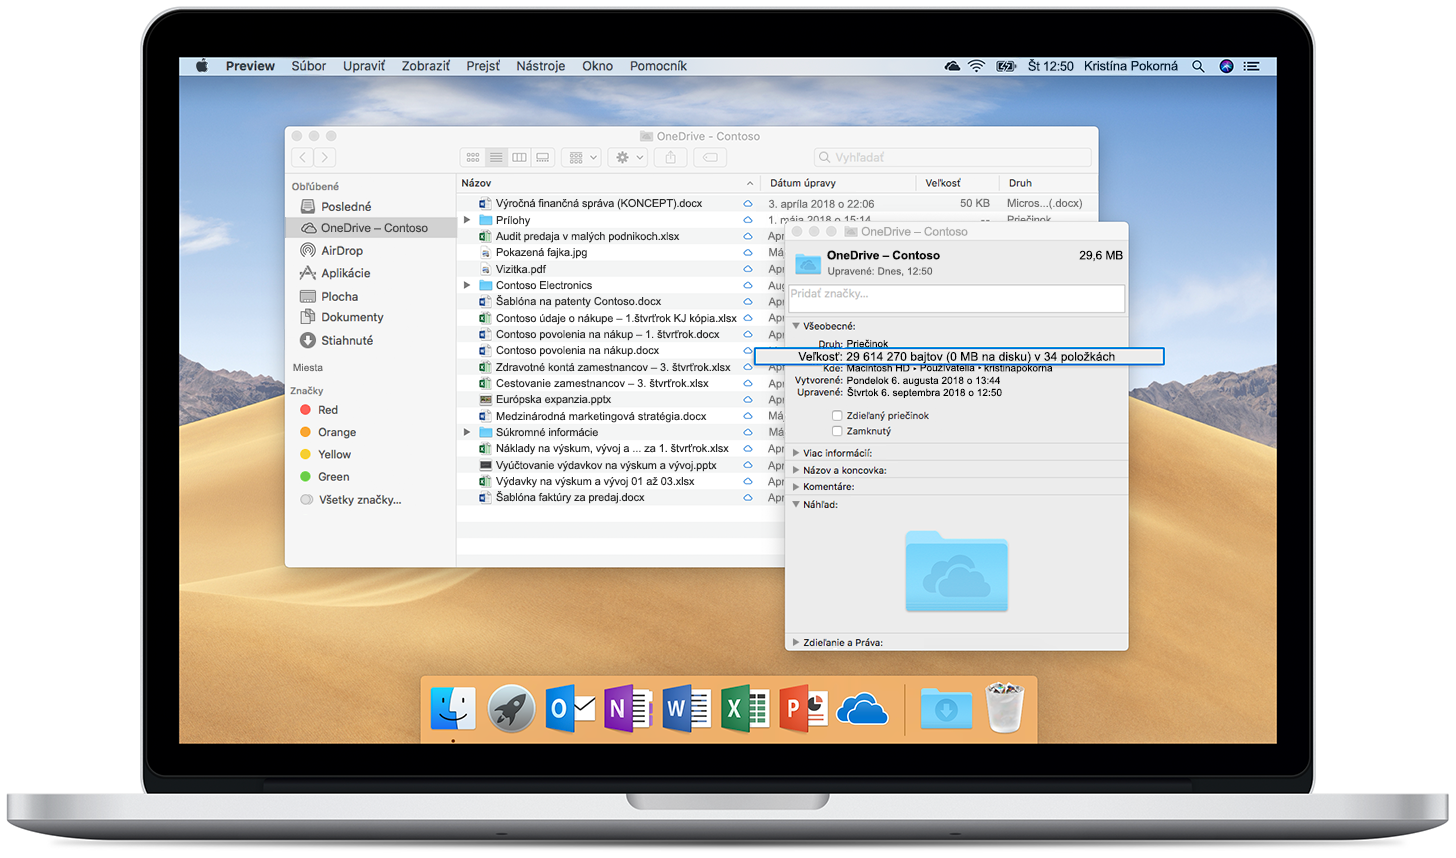 Obrázok zobrazujúci Onedrivové súbory na požiadanie na otvorenom Macu.